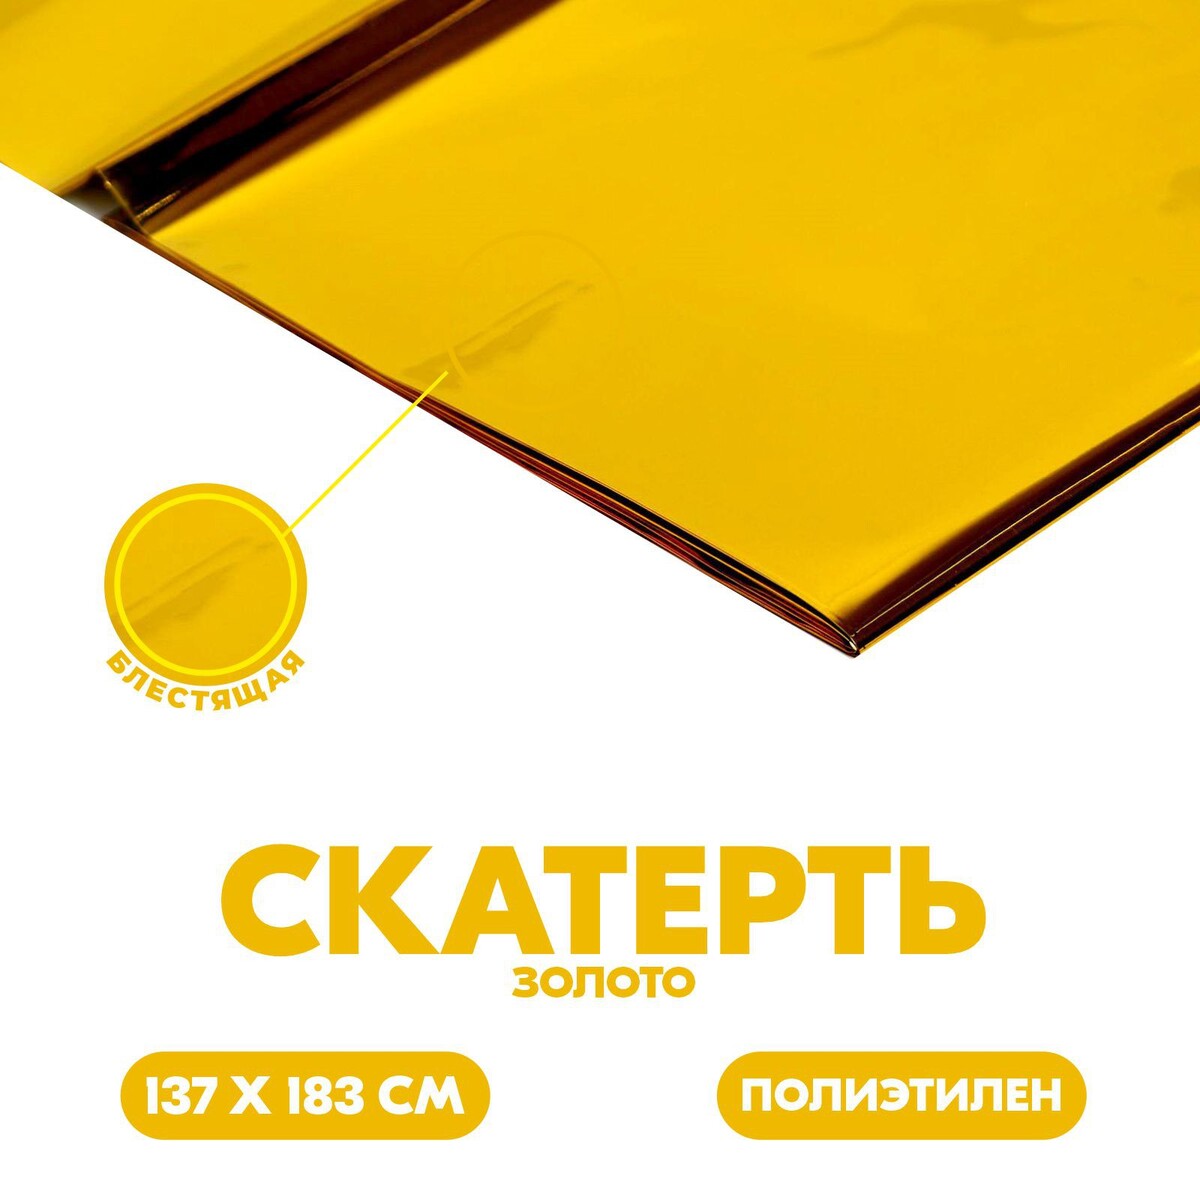 Скатерть блестящая, 137 × 183 см, цвет золотой блестящая идея кристи